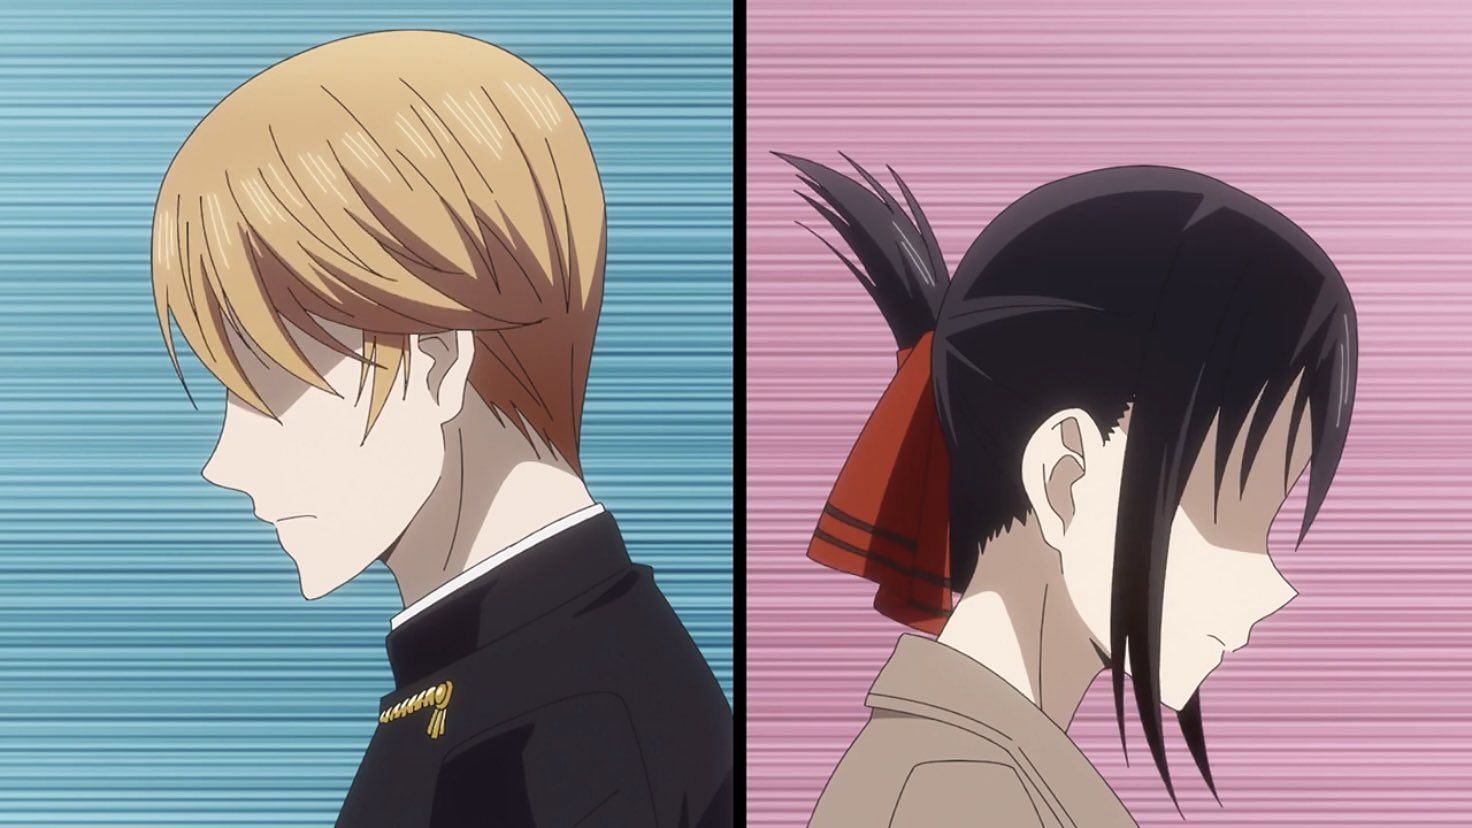 Kaguya-sama: Love is War – Ultra Romantic (Season 3) – At a Glance Anime